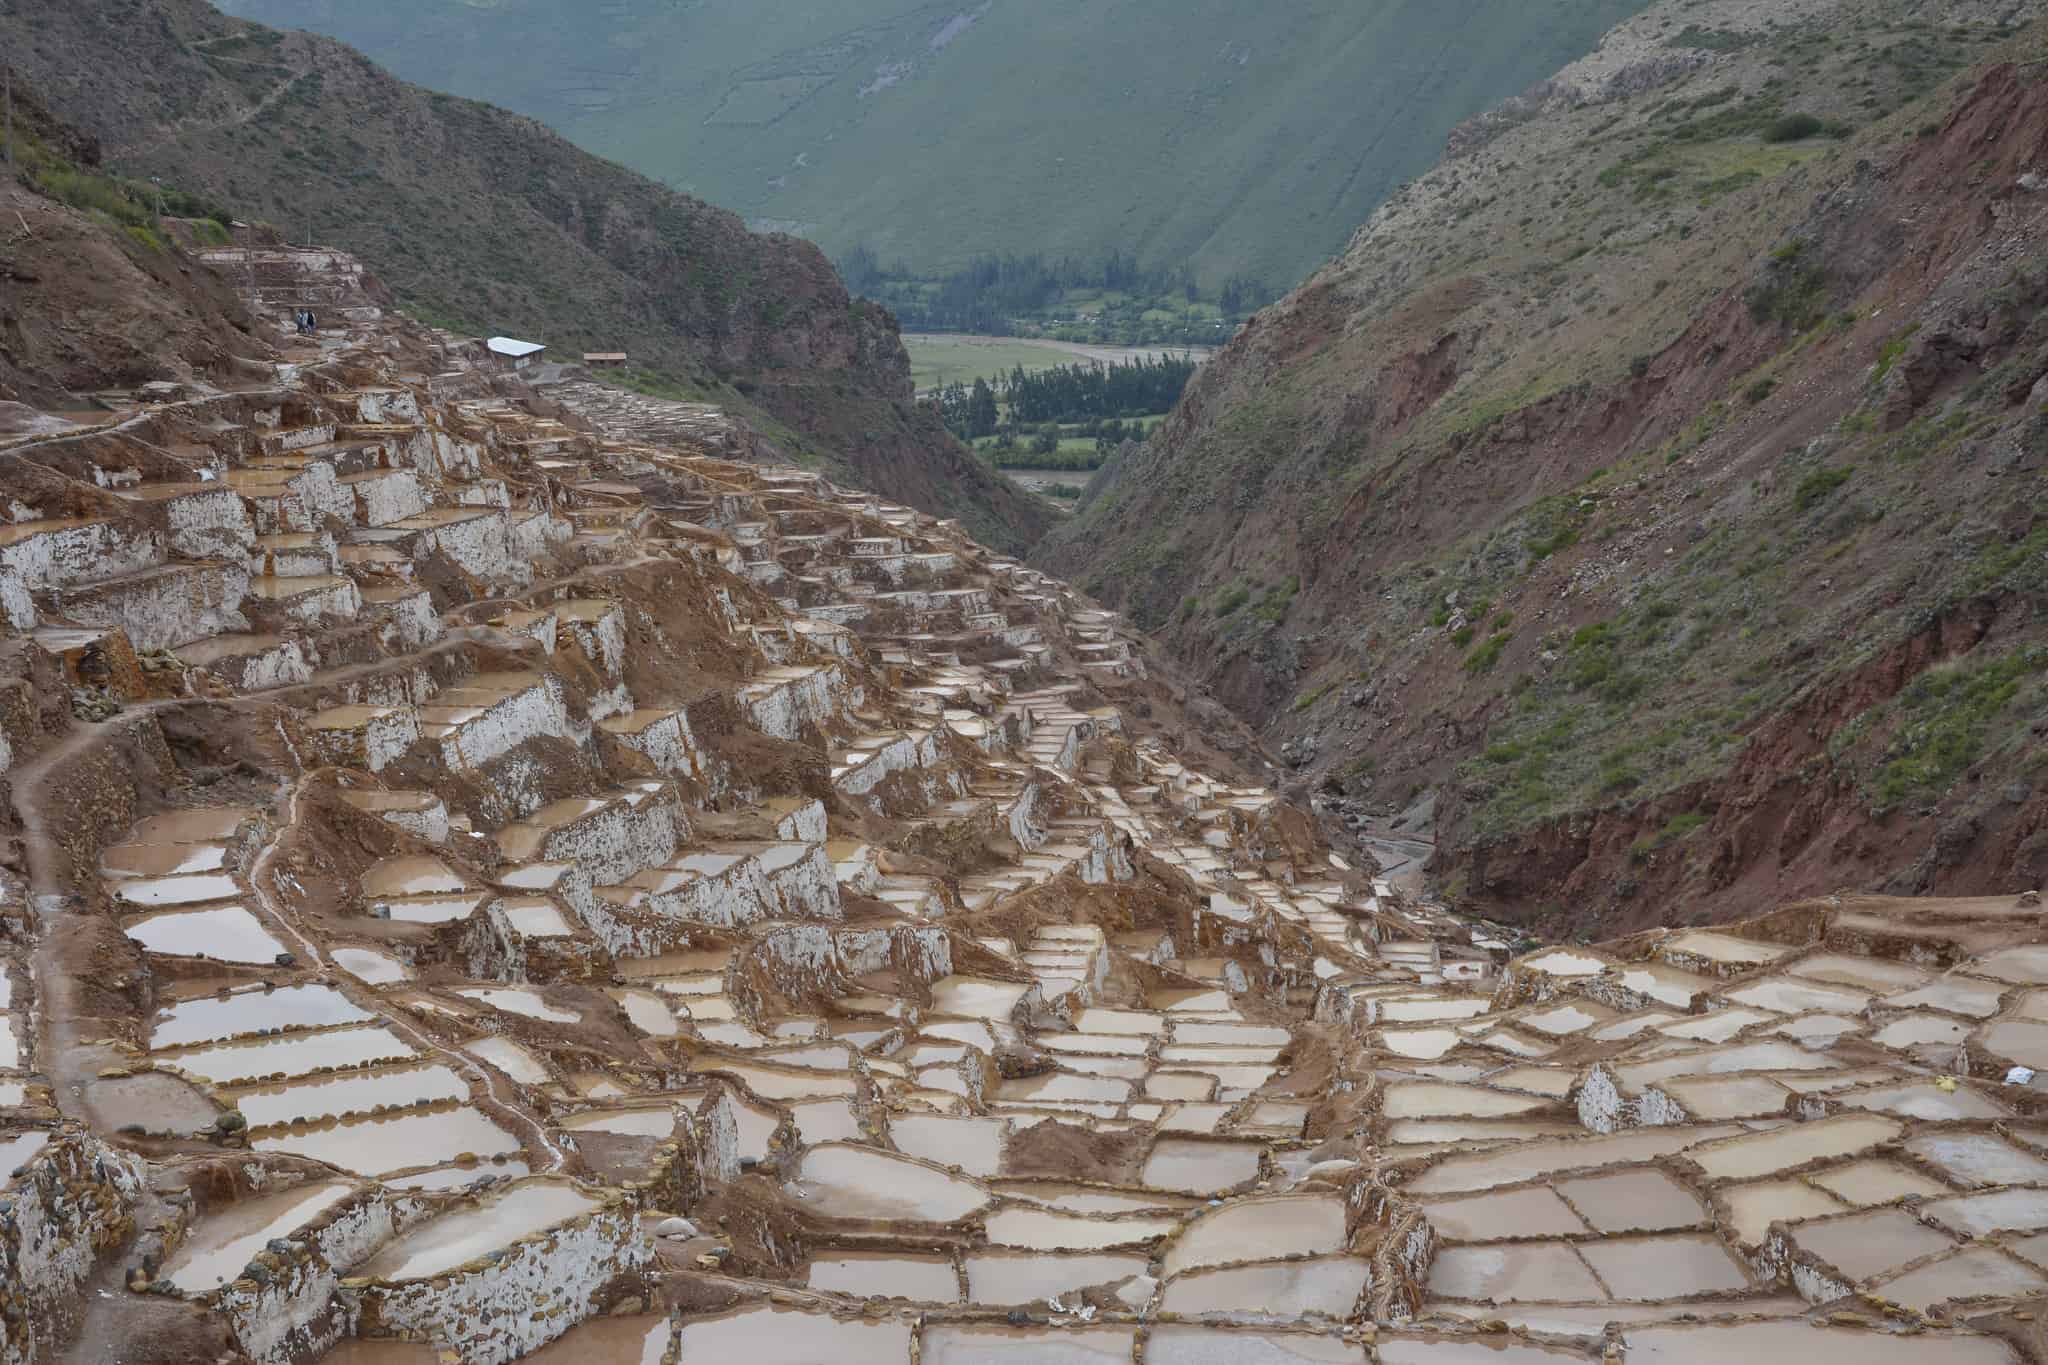 Que lugares visitar en Cusco - Salineras de maras